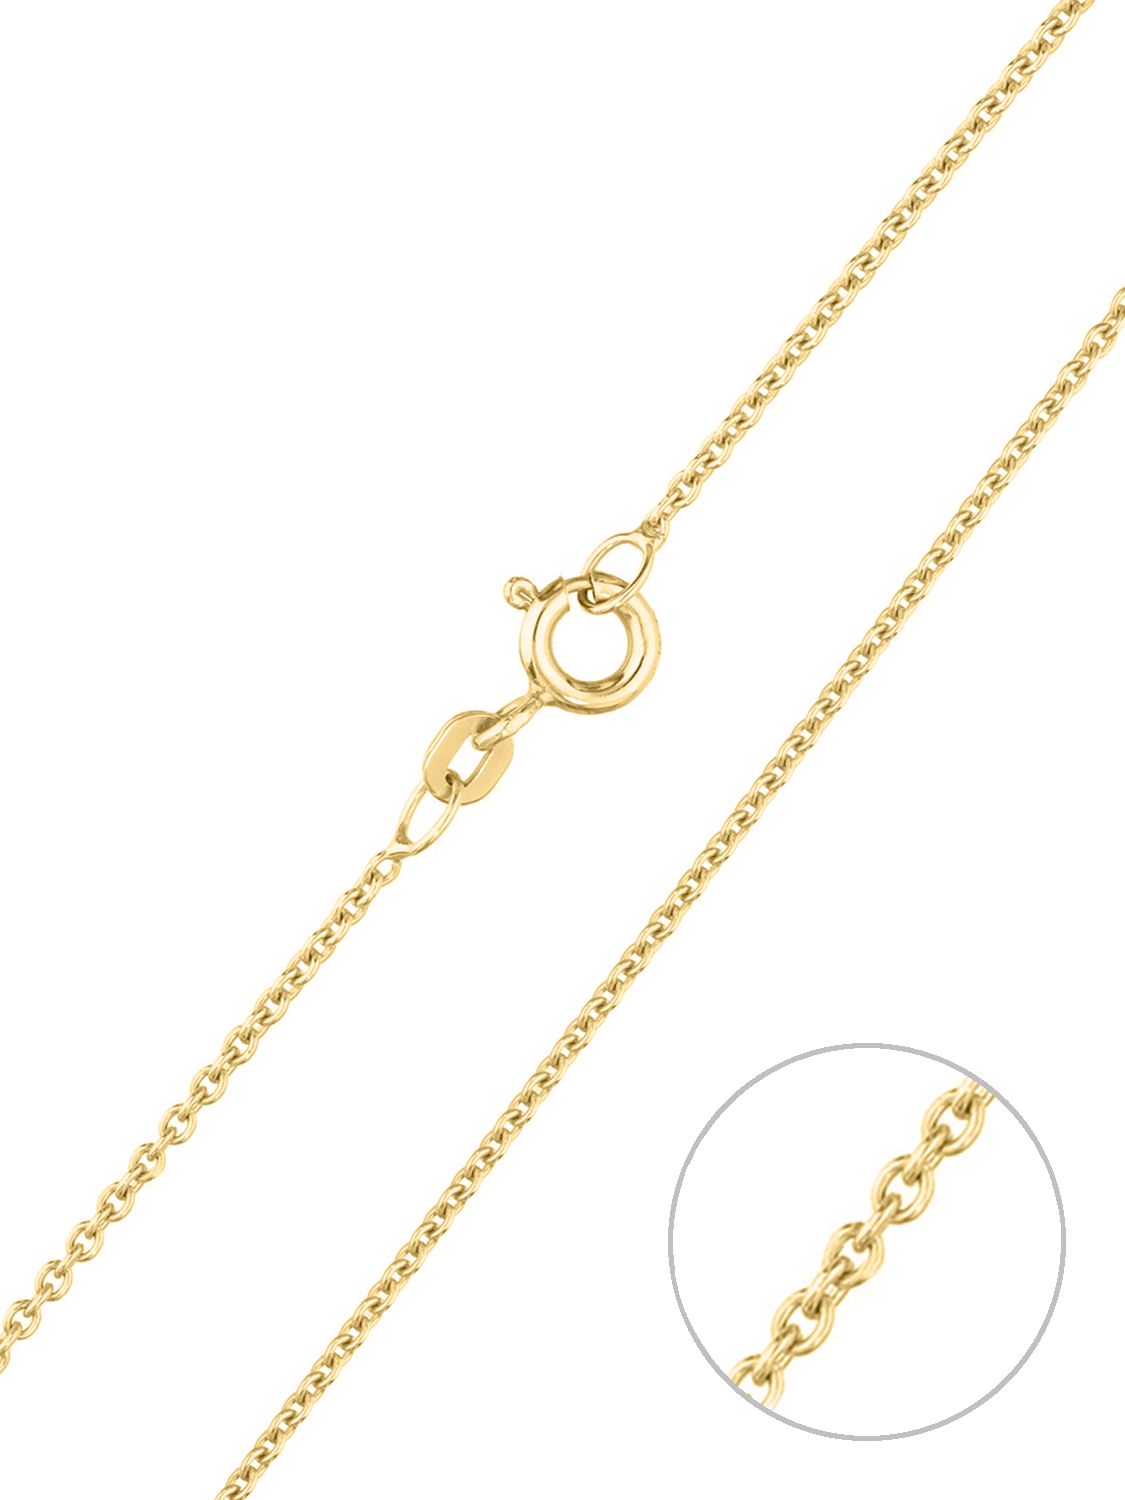 Kordoubt - Halskette 585 Gelbgold Federring - Breite 1,5 mm - Länge 45 cm